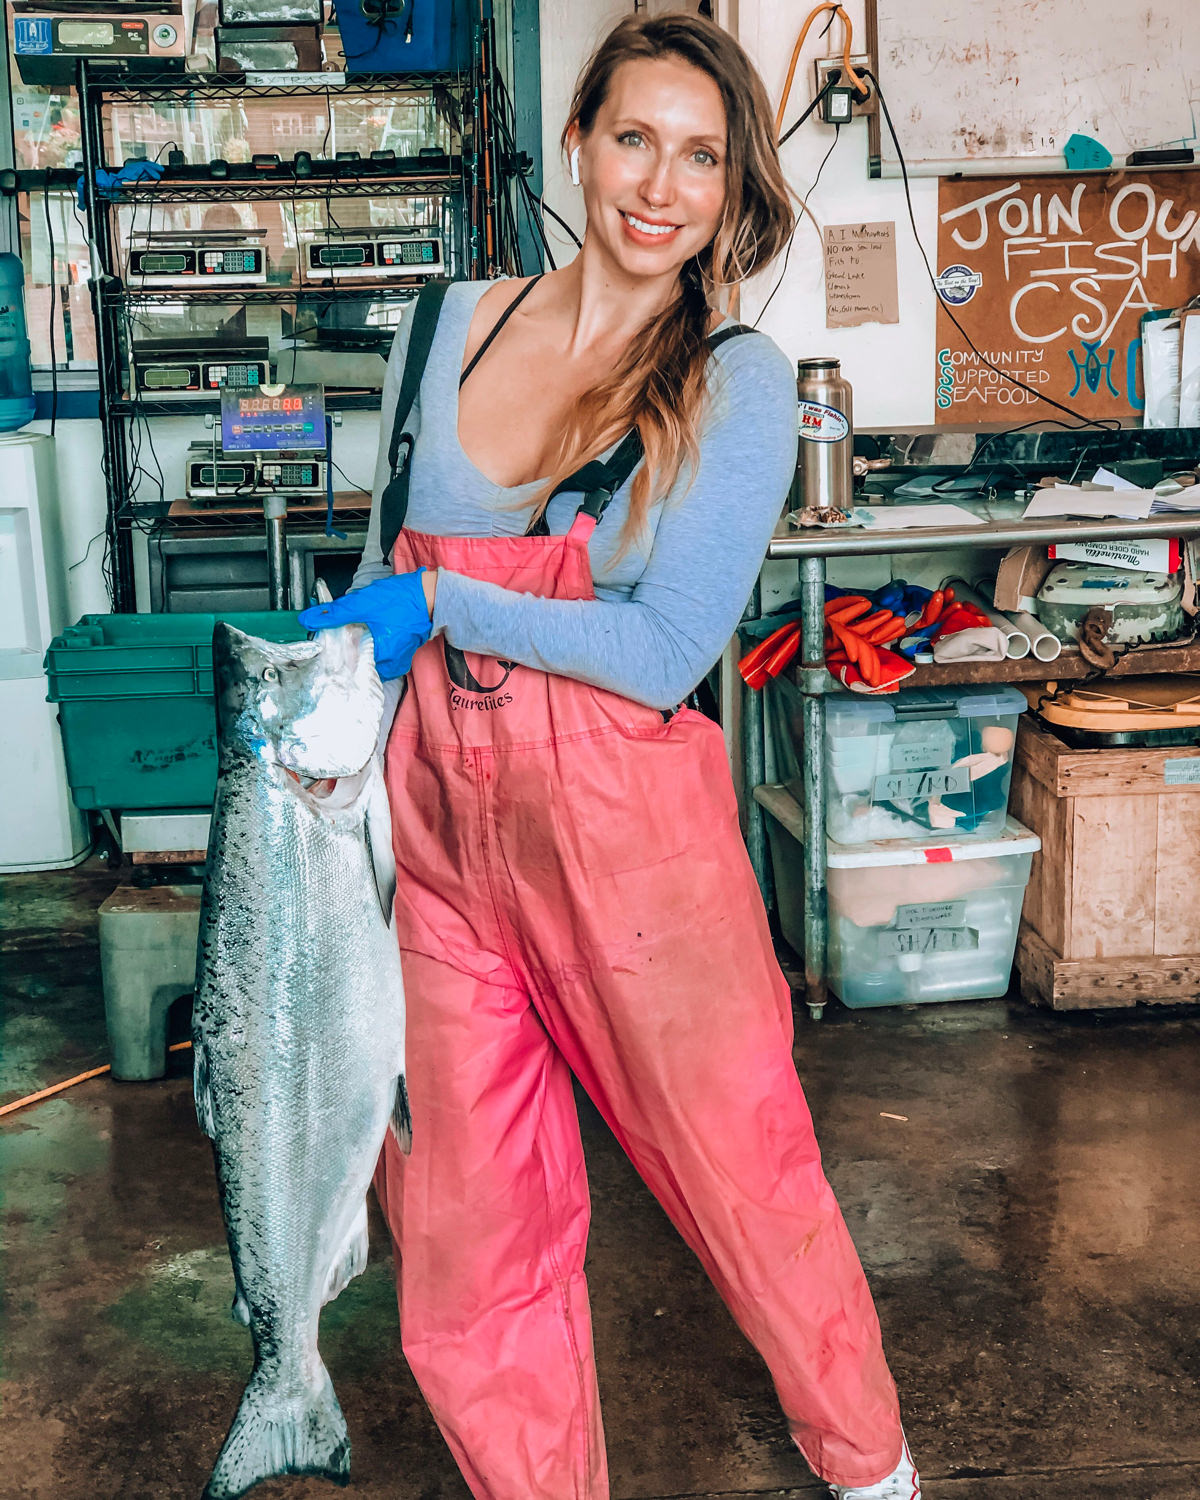 Woman holding tuna